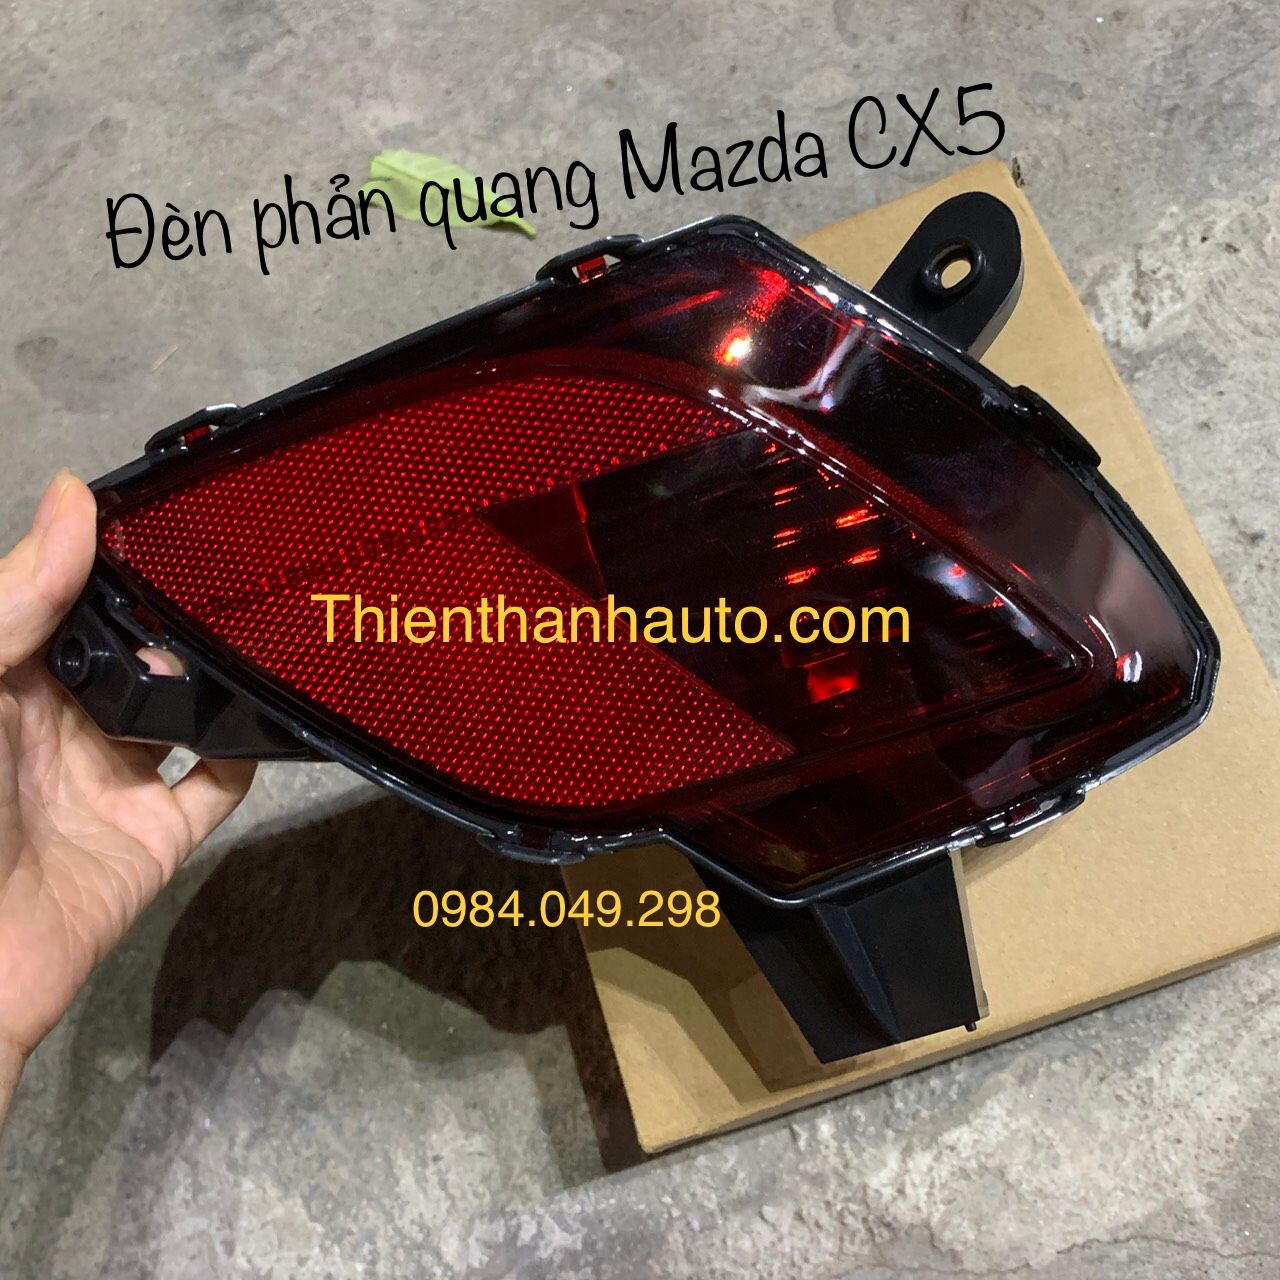 Đèn phản quang Mazda CX5 đời 2014-2016 giá tốt - Thienthanhauto.com